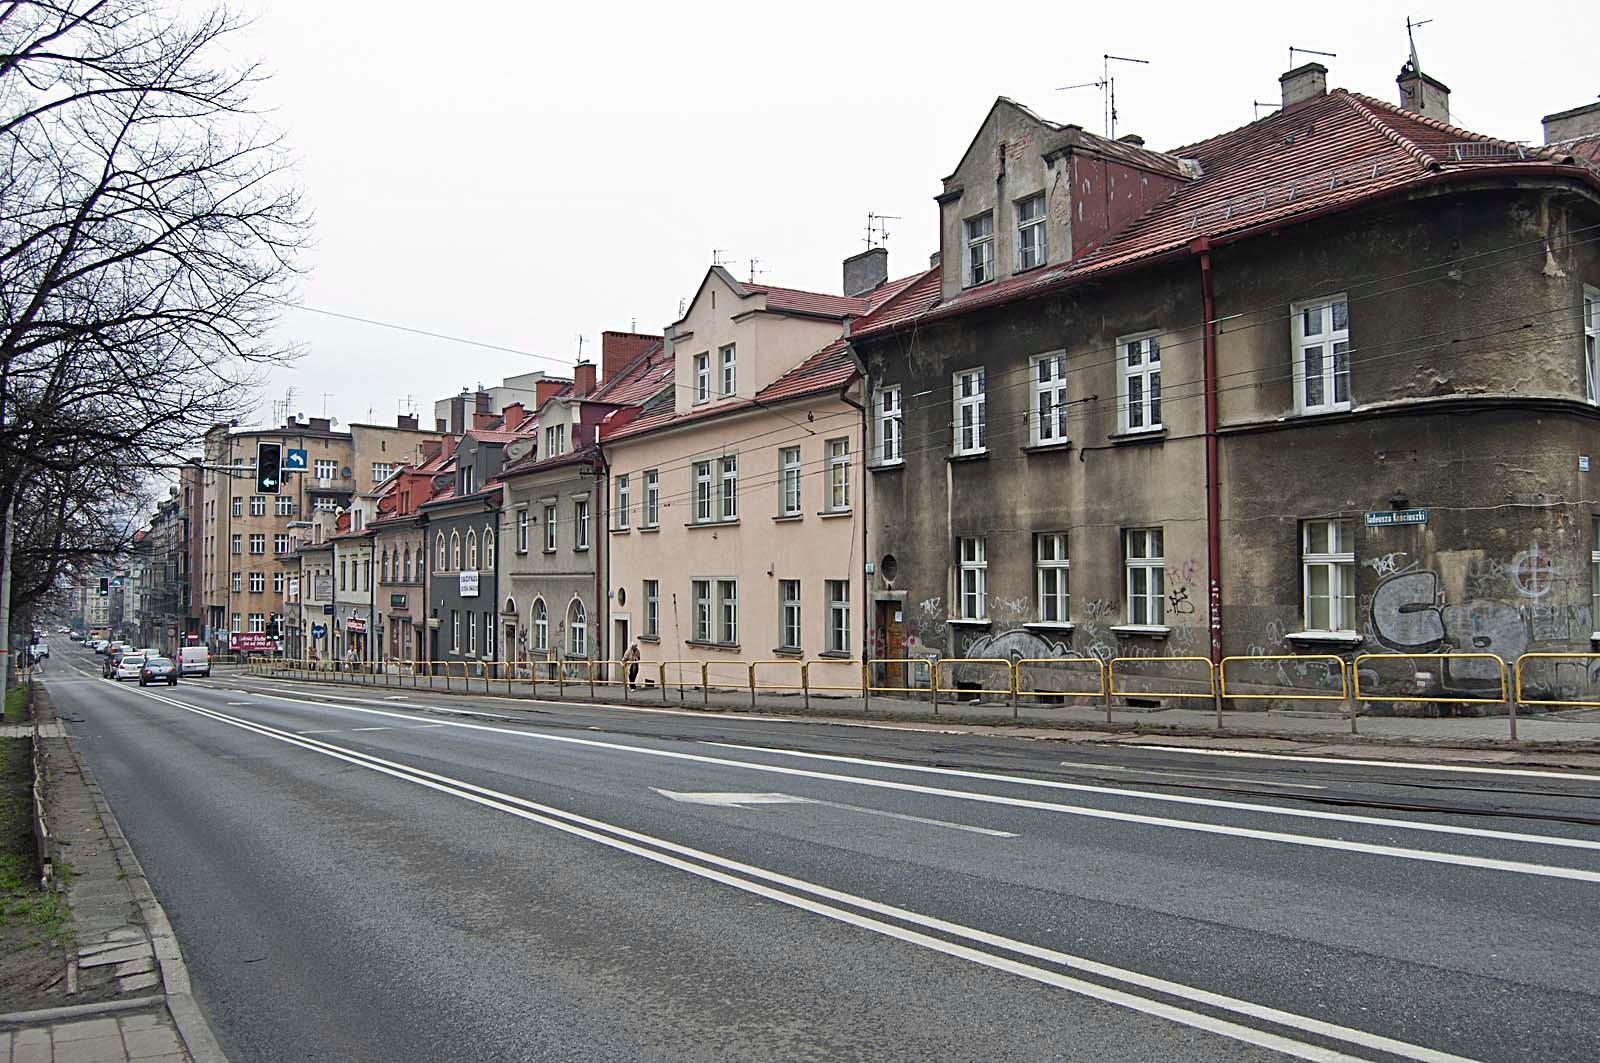 Ulica z torami tramwajowymi i budynkami